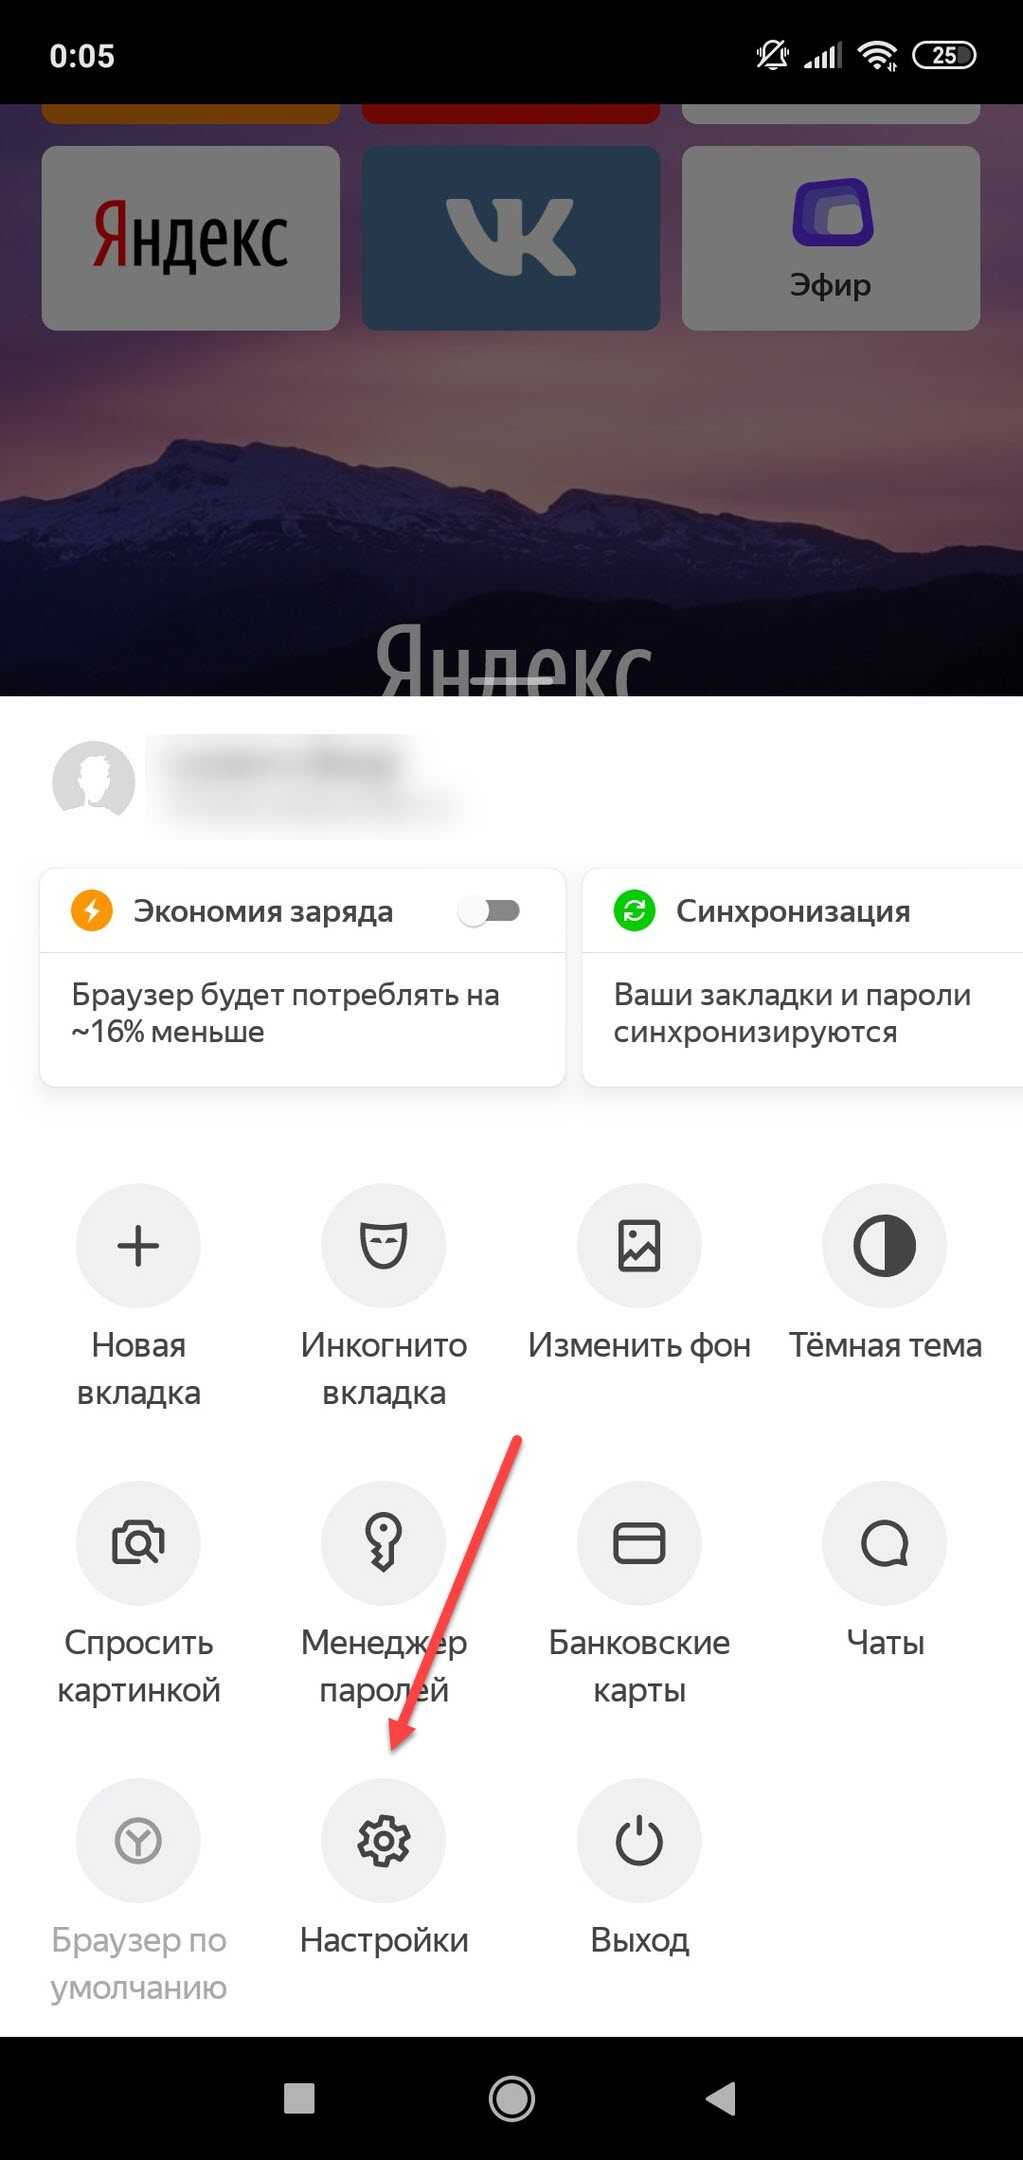 Удаление телефона на яндексе. Очистить историю в Яндексе на телефоне. Как очистить историю в Яндексе на телефоне. История запросов в Яндексе на телефоне. Как удалить историю в Яндексе на телефоне.